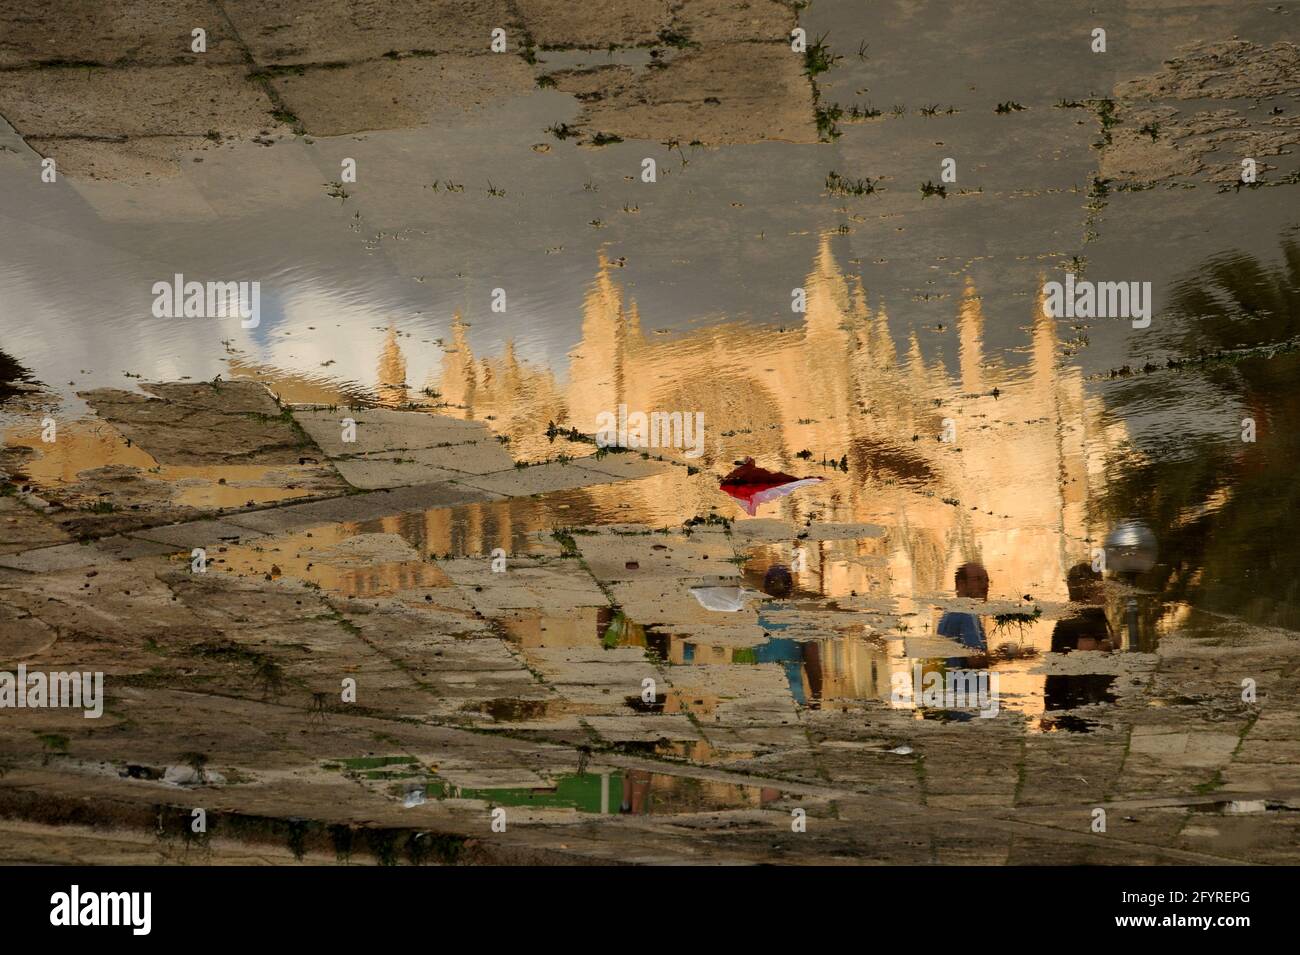 La cattedrale di Palma de Mallorca riflessa in una pozzanghera Stockfoto